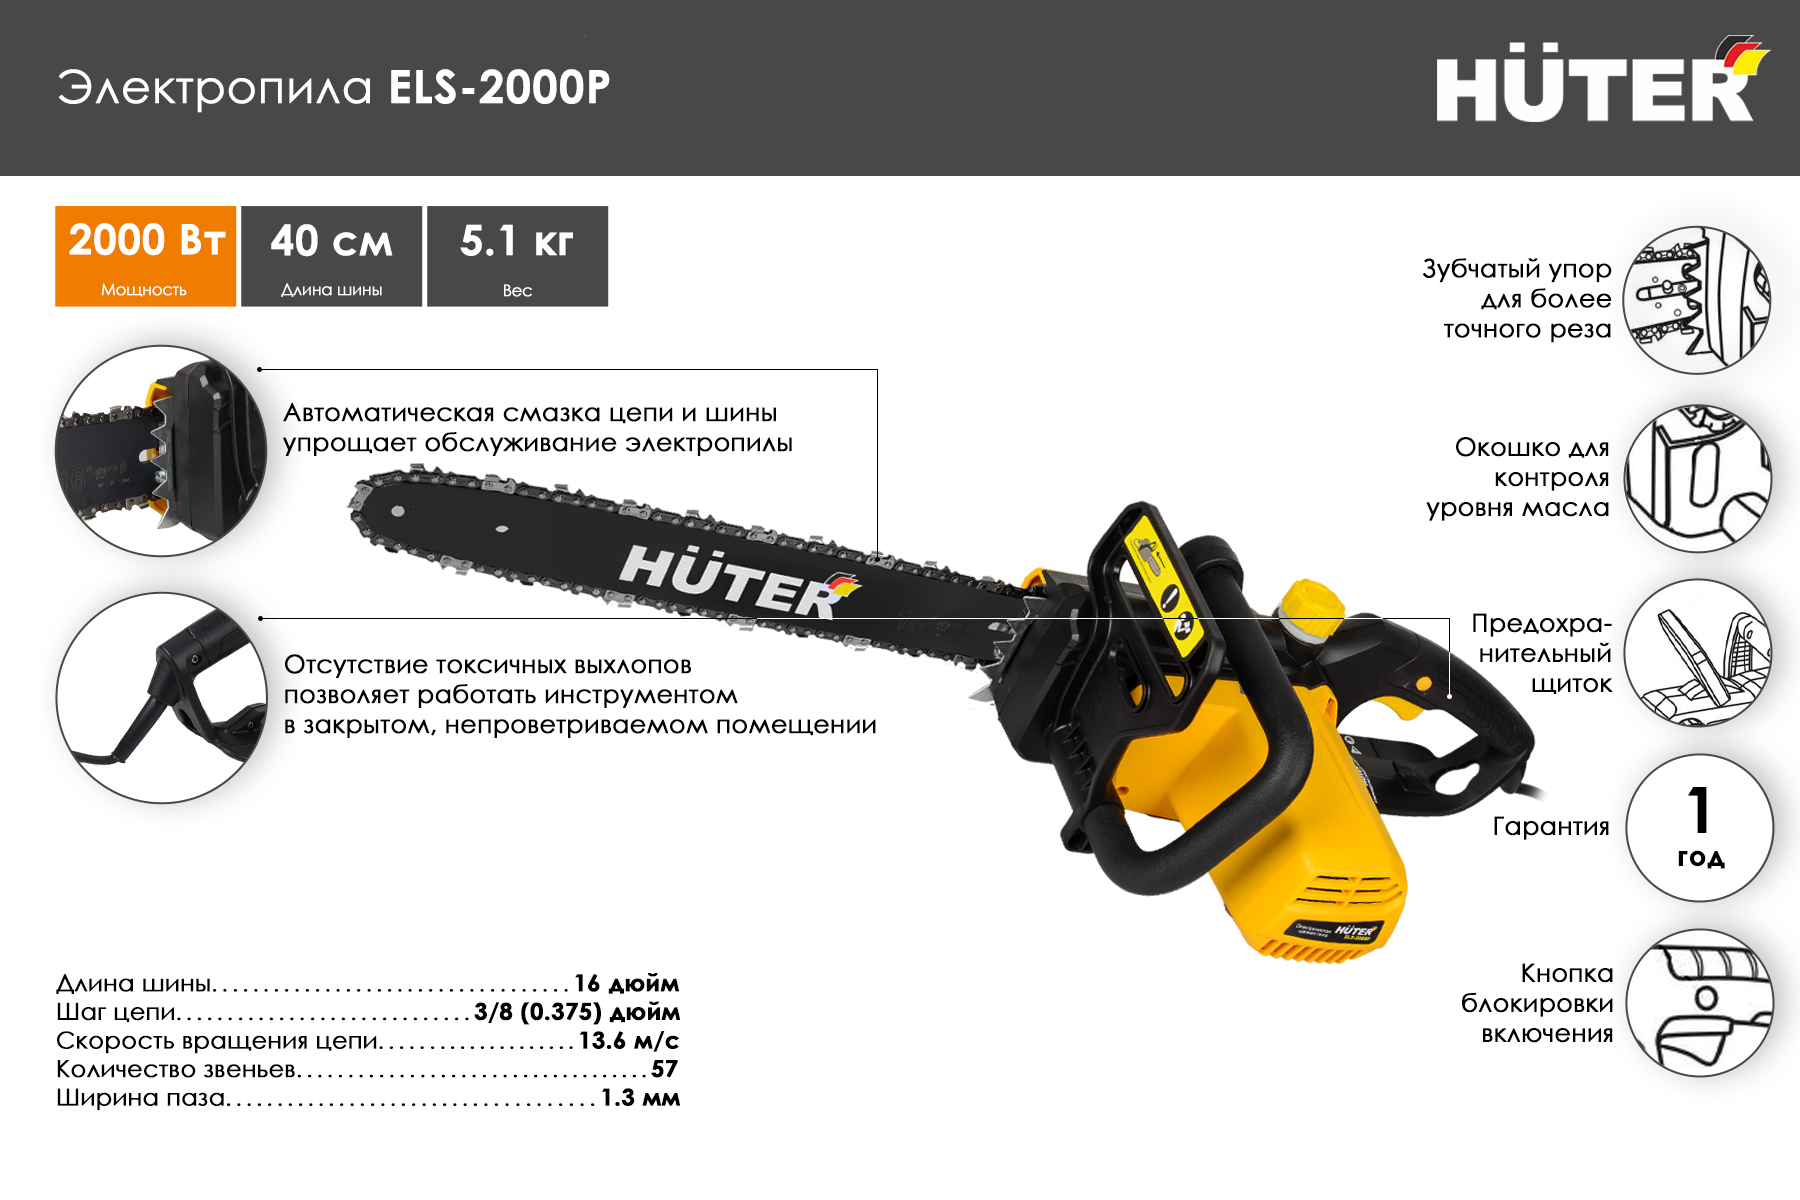 Электропила Huter ELS-2000P 70/10/3